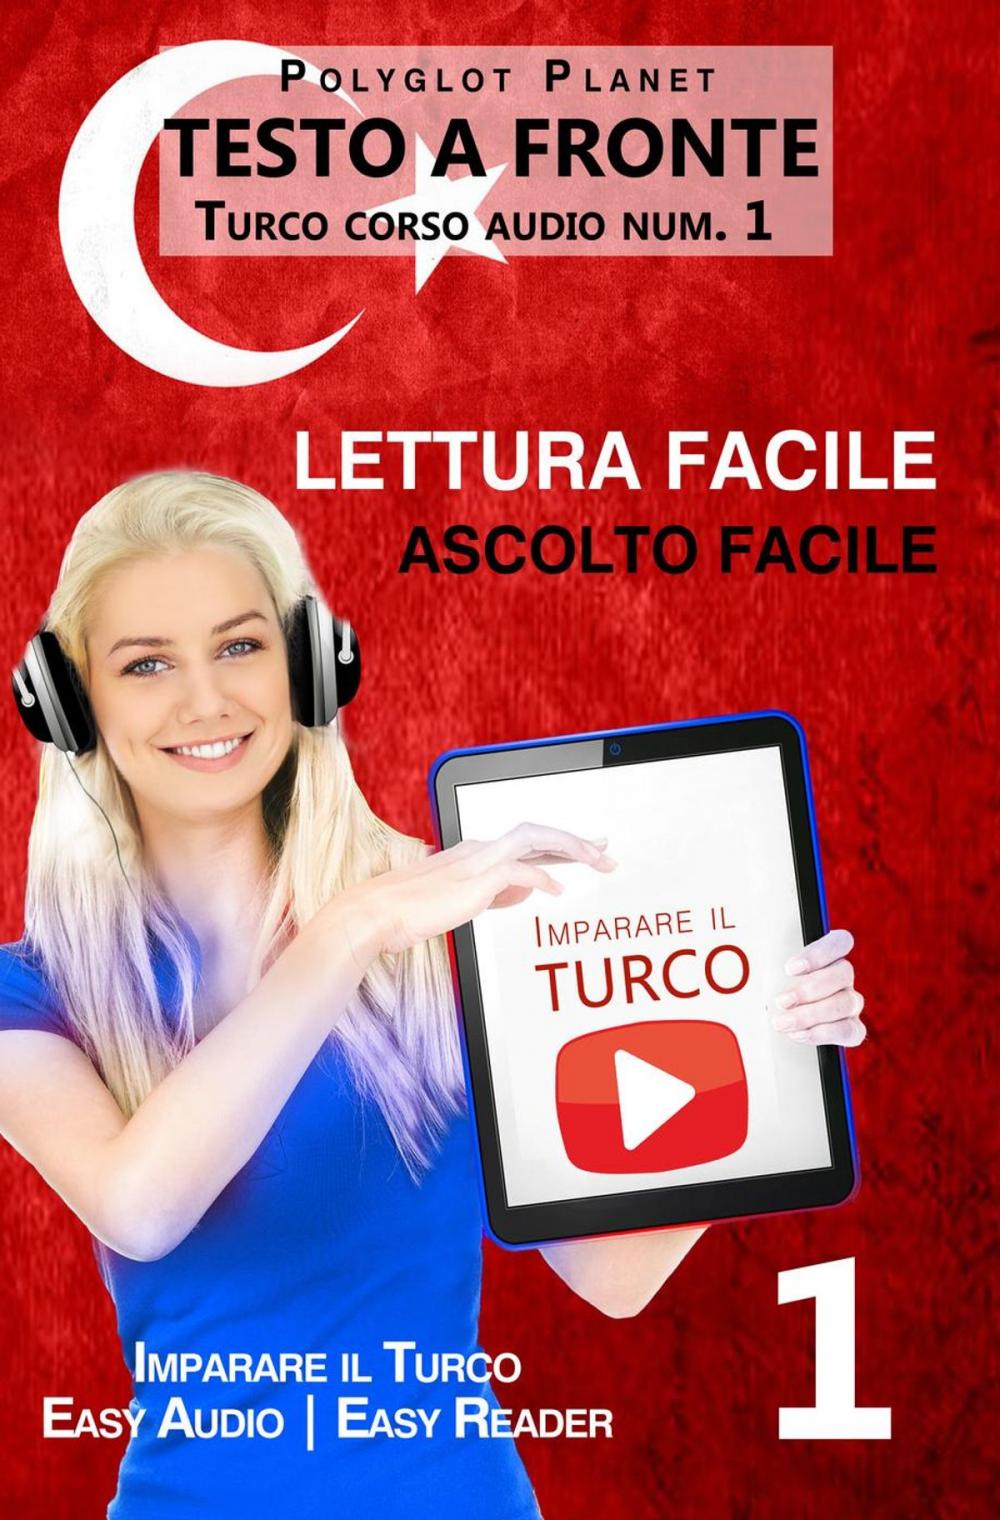 Big bigCover of Imparare il turco - Lettura facile | Ascolto facile | Testo a fronte - Turco corso audio num. 1